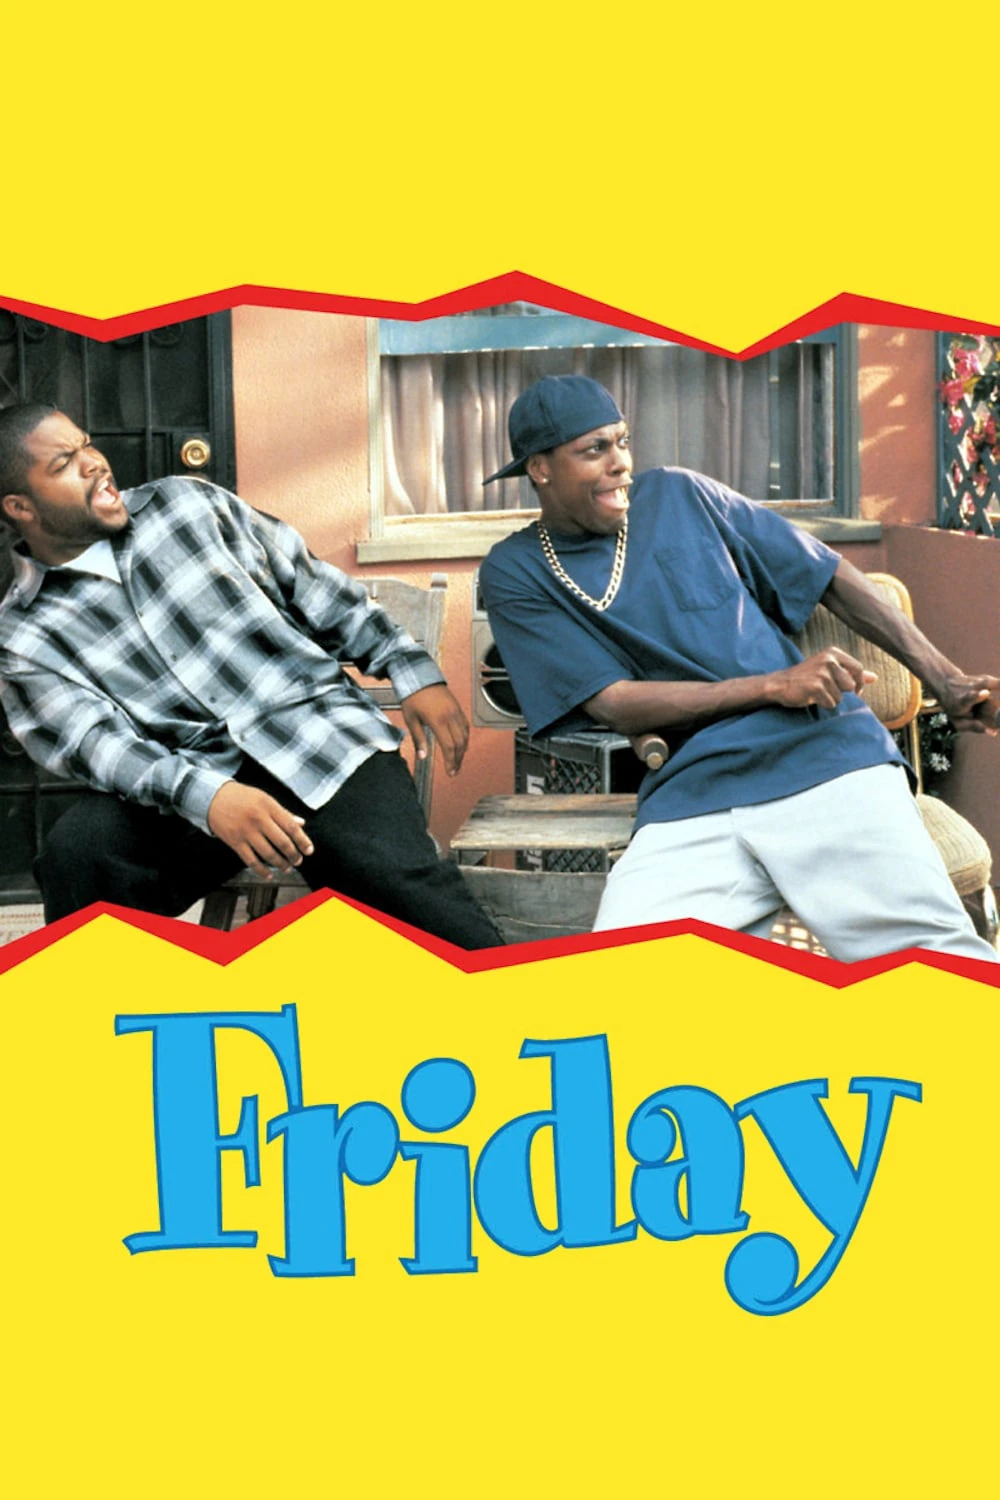 Thứ Sáu | Friday (1995)